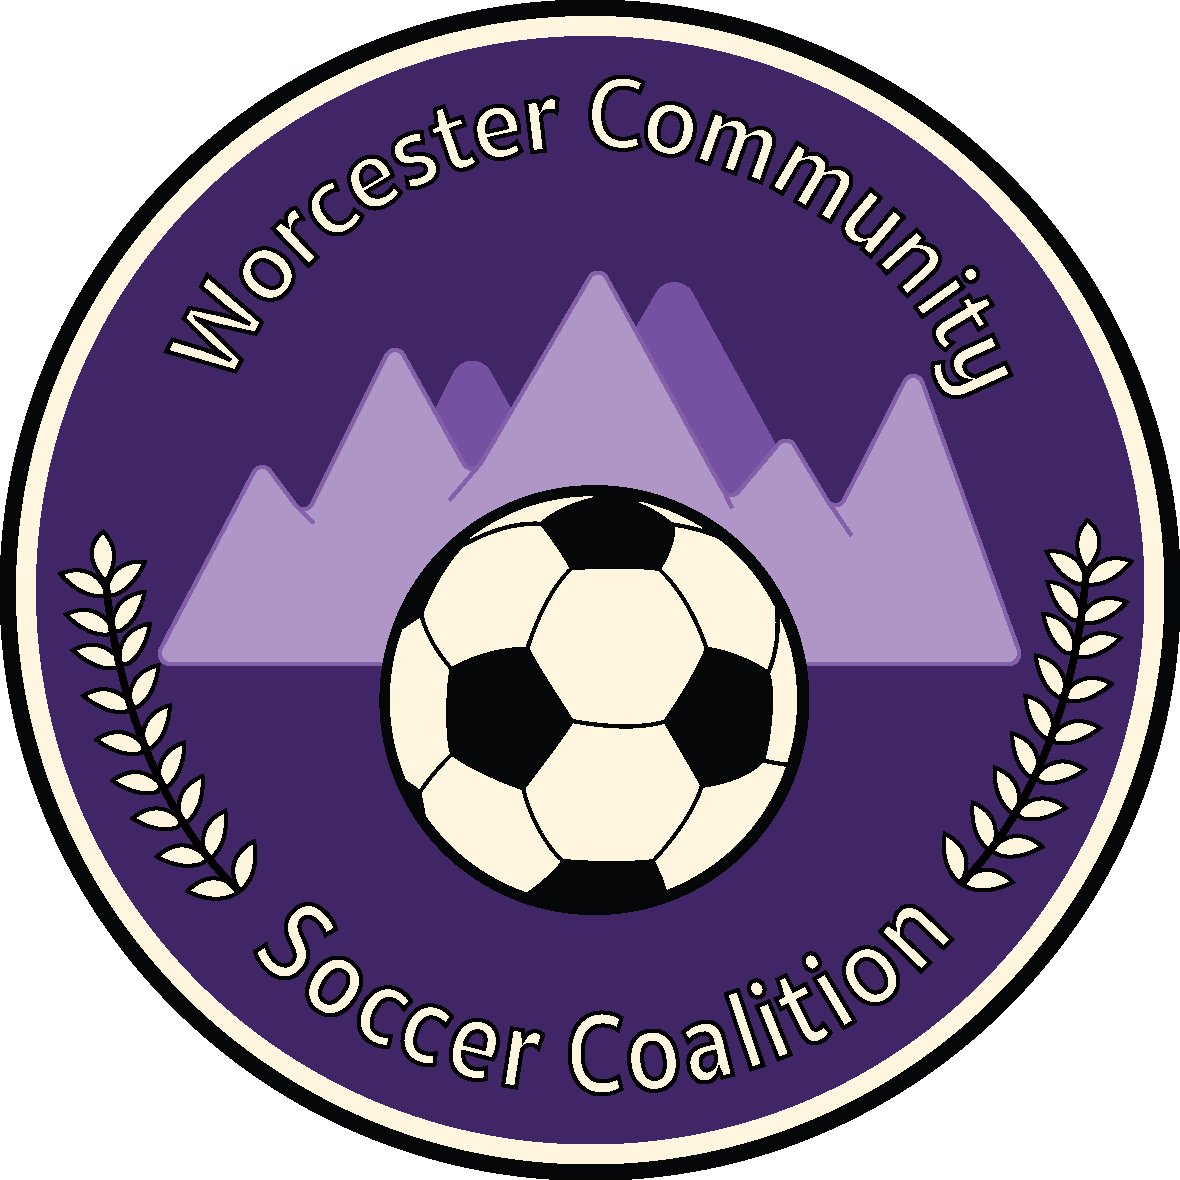 Worcester Soccer